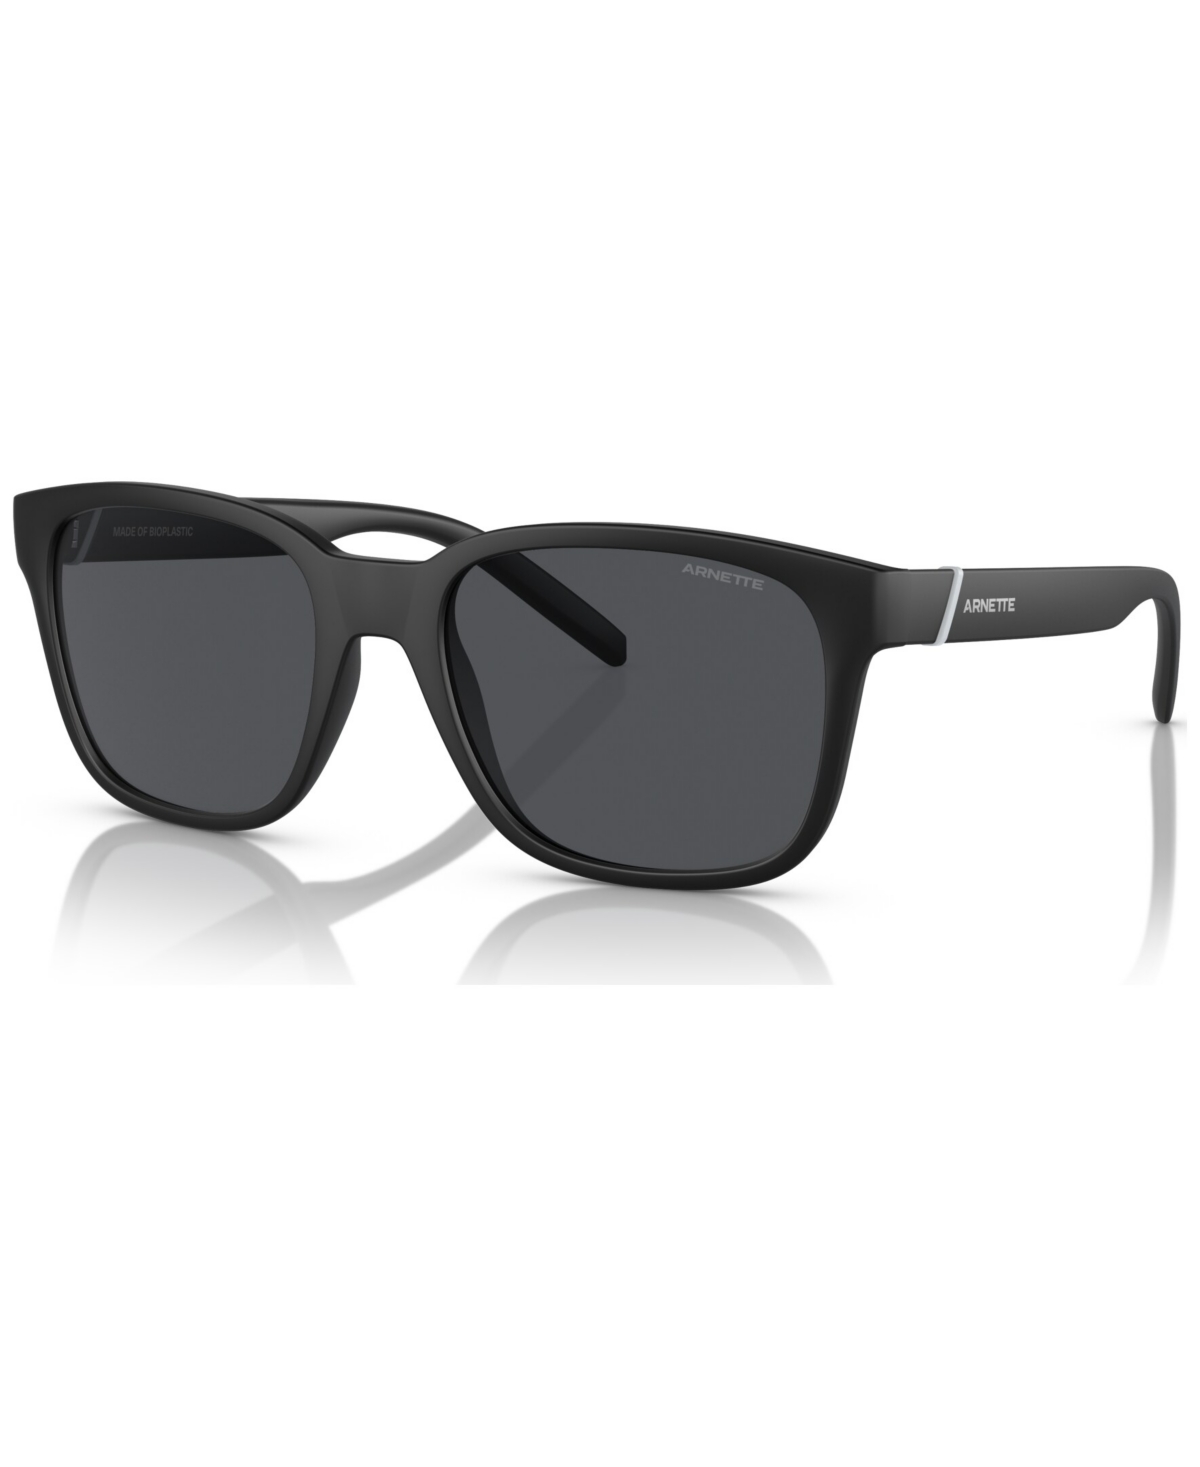 Men's Sunglasses, Surry H - Matte Black